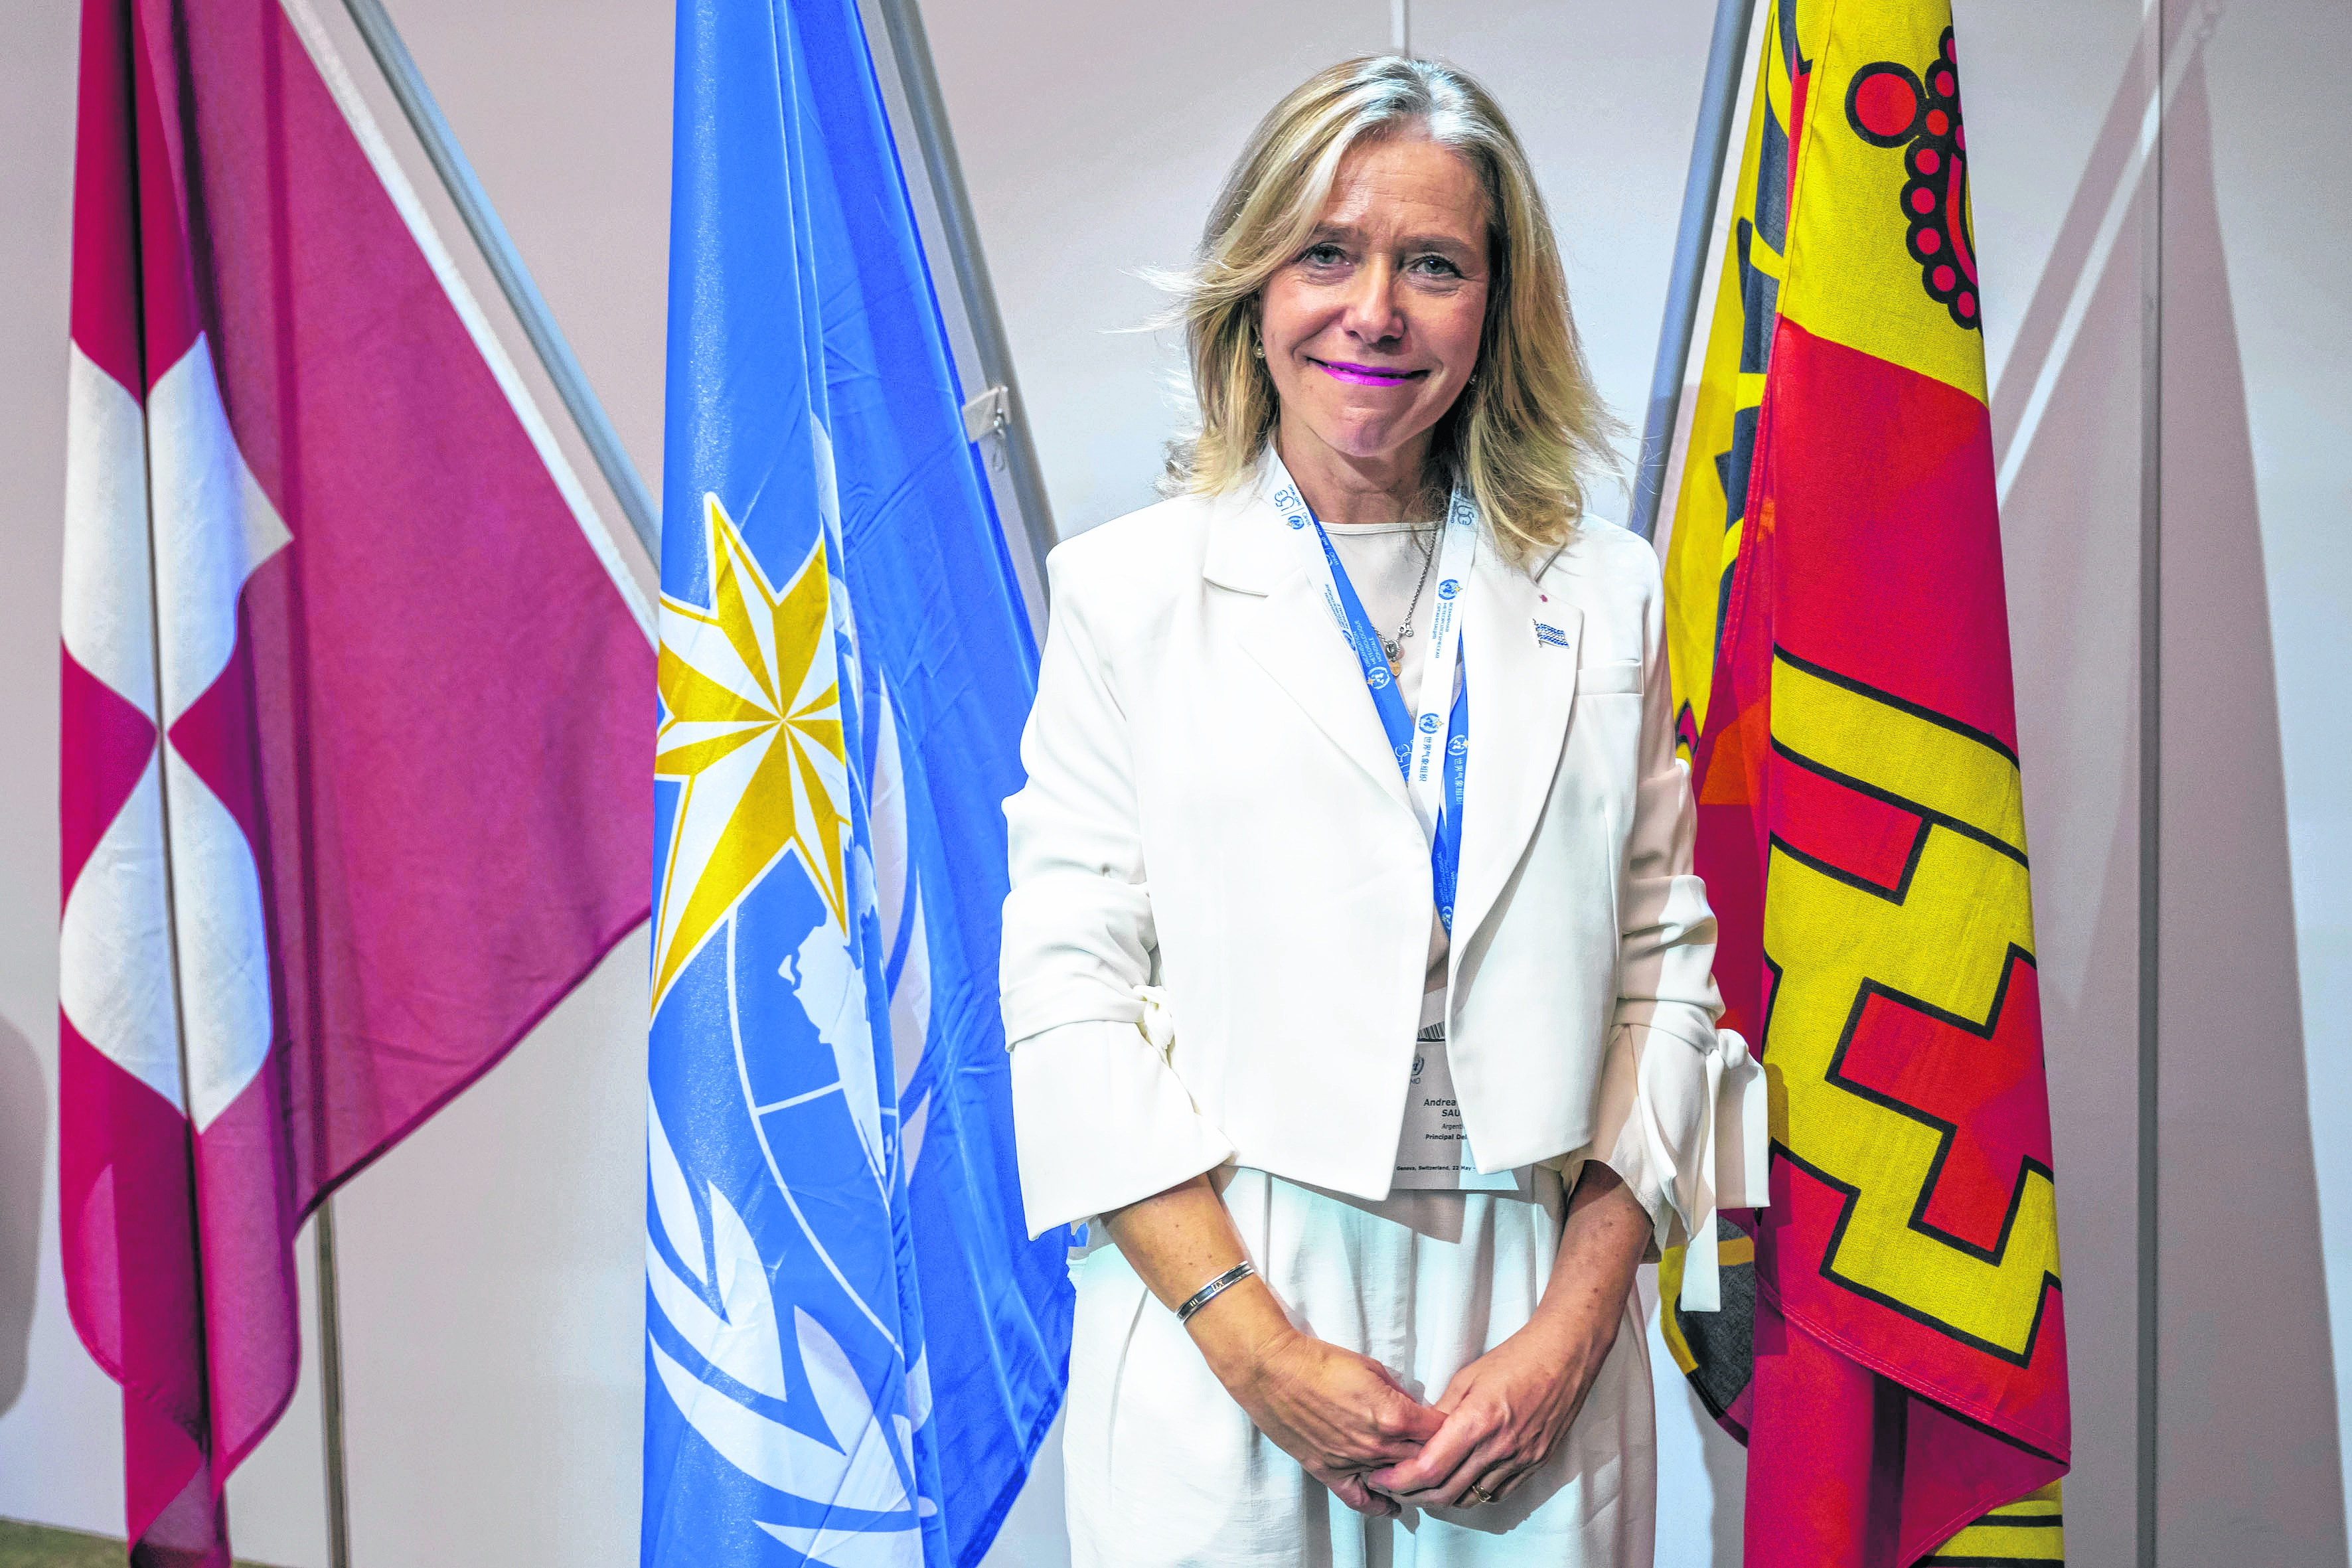 La argentina Celeste Saulo posa para una fotografía tras ser elegida secretaria general de la Organización Mundial de Meteorología, en Ginebra, Suiza, el 1 de junio de 2023. (Martial Trezzini/Keystone vía AP)